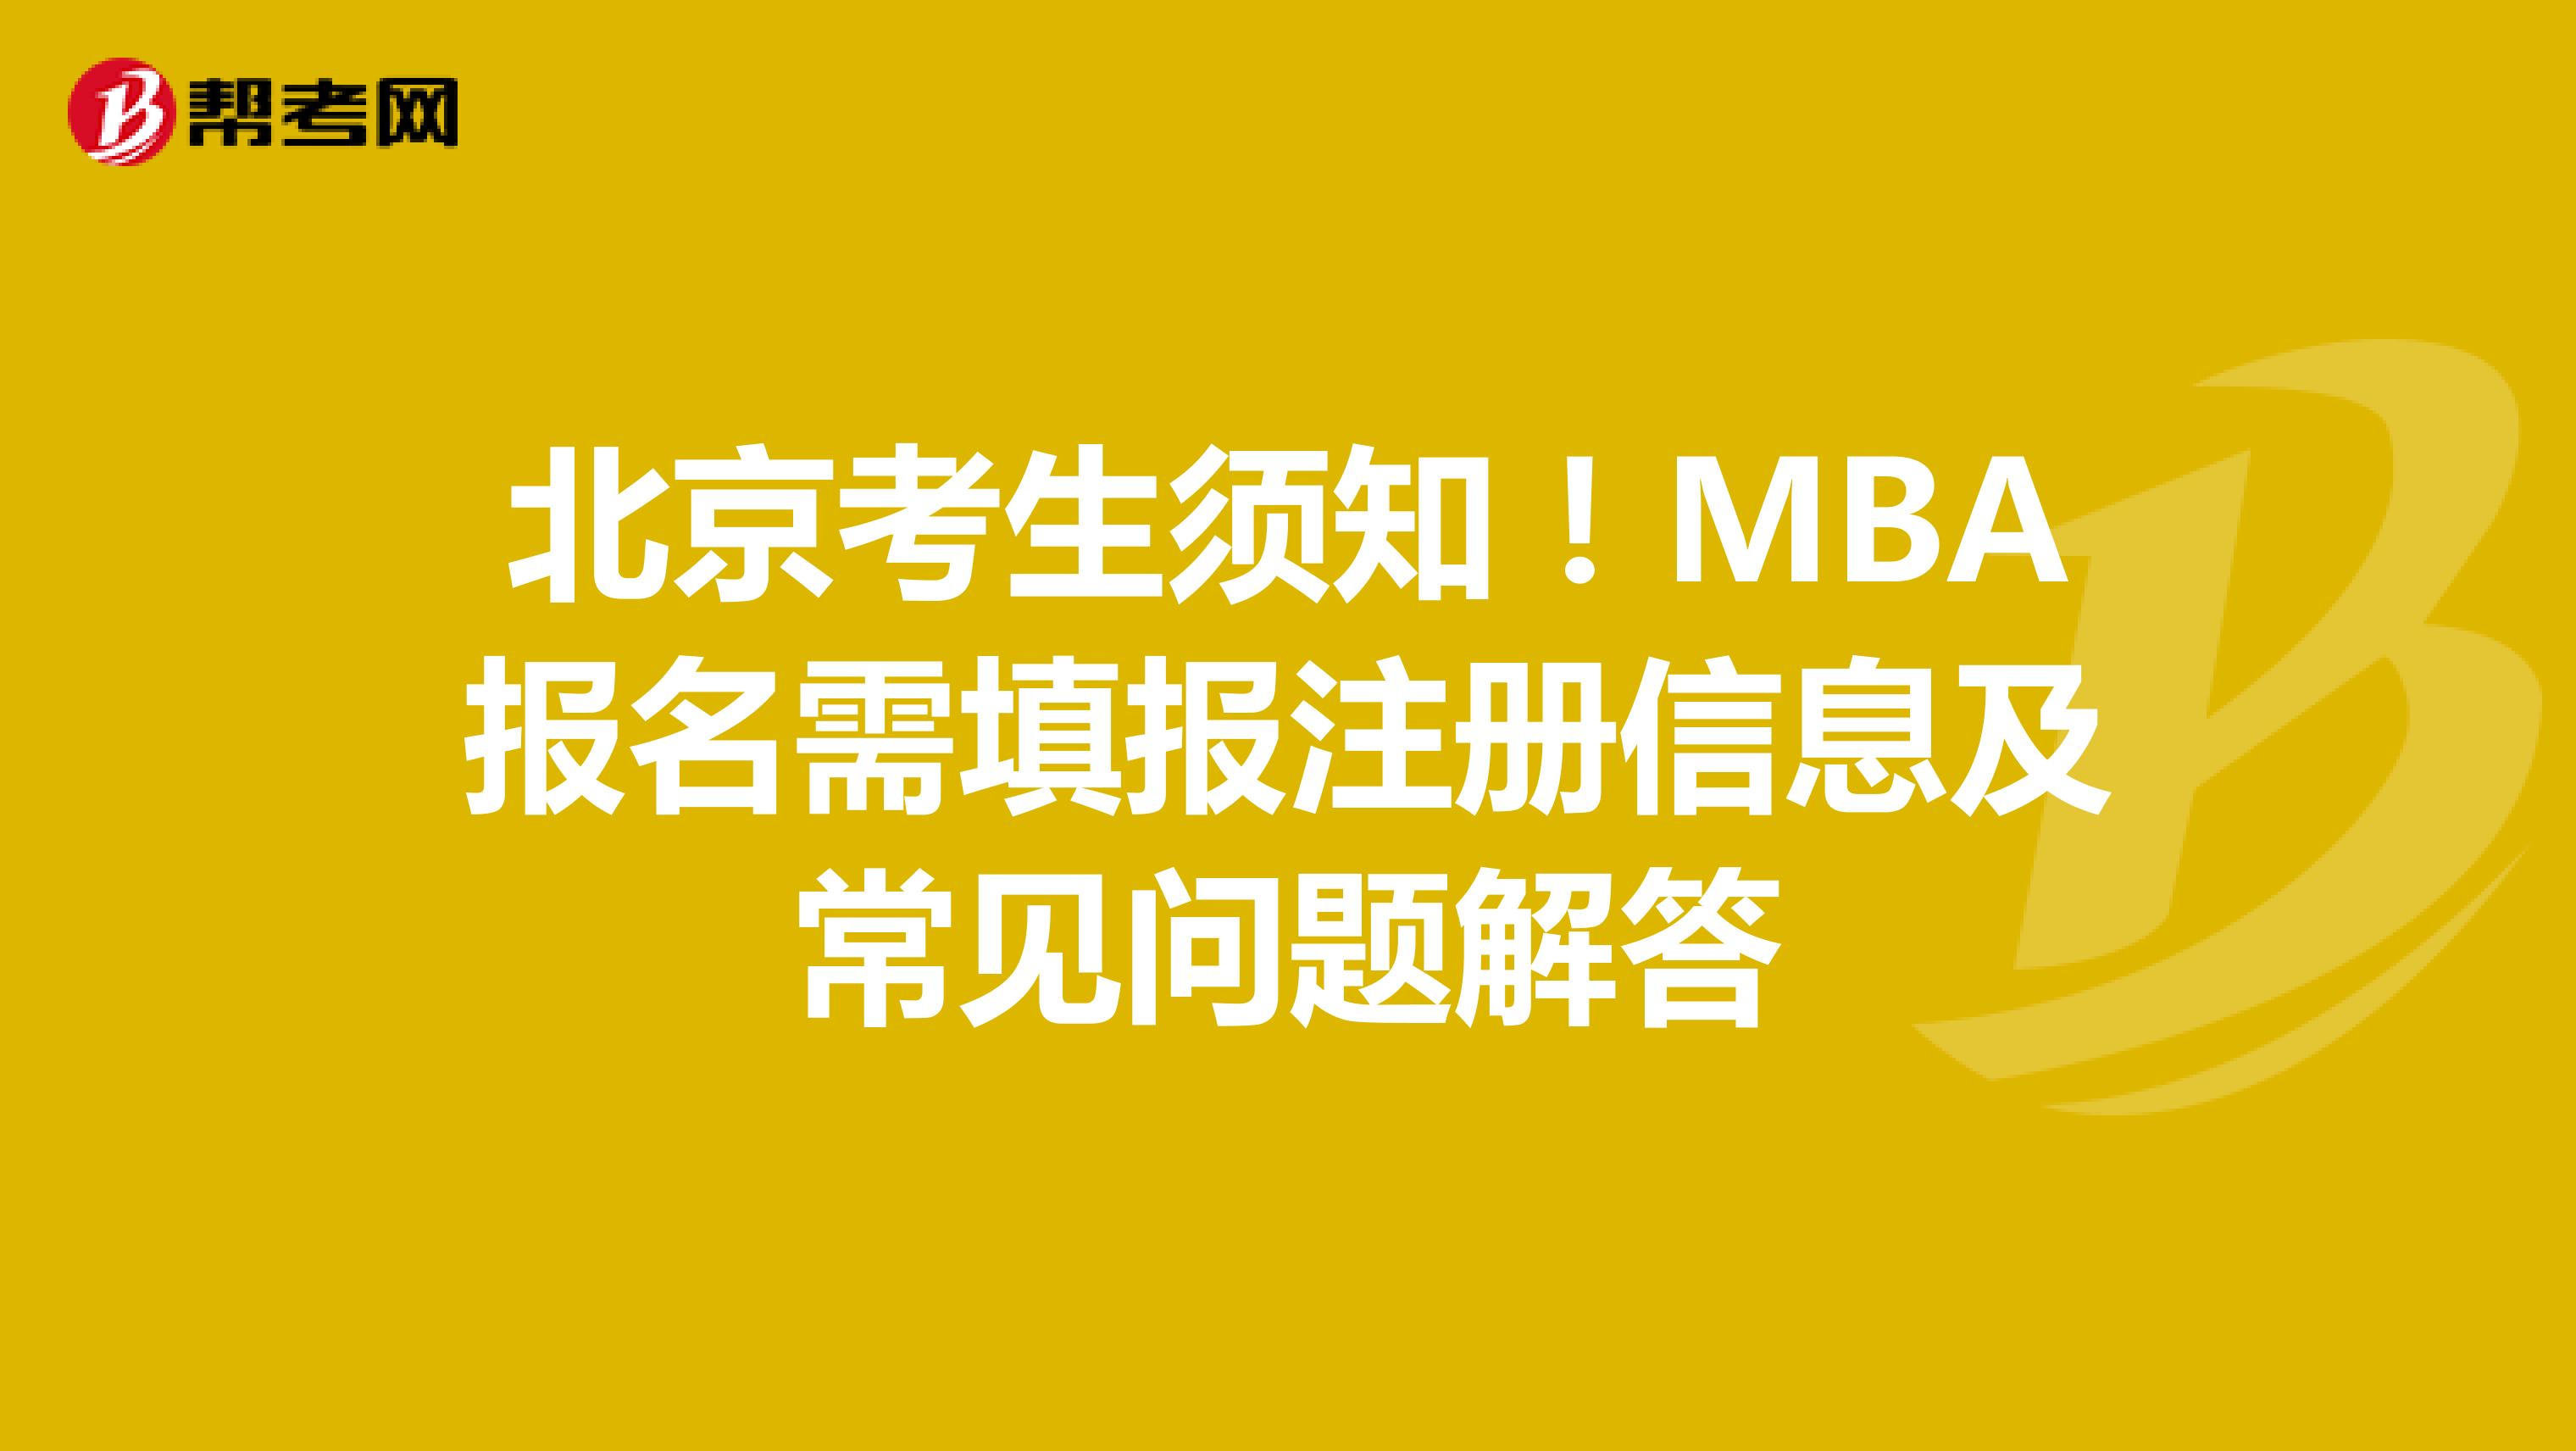 北京考生须知！MBA报名需填报注册信息及常见问题解答